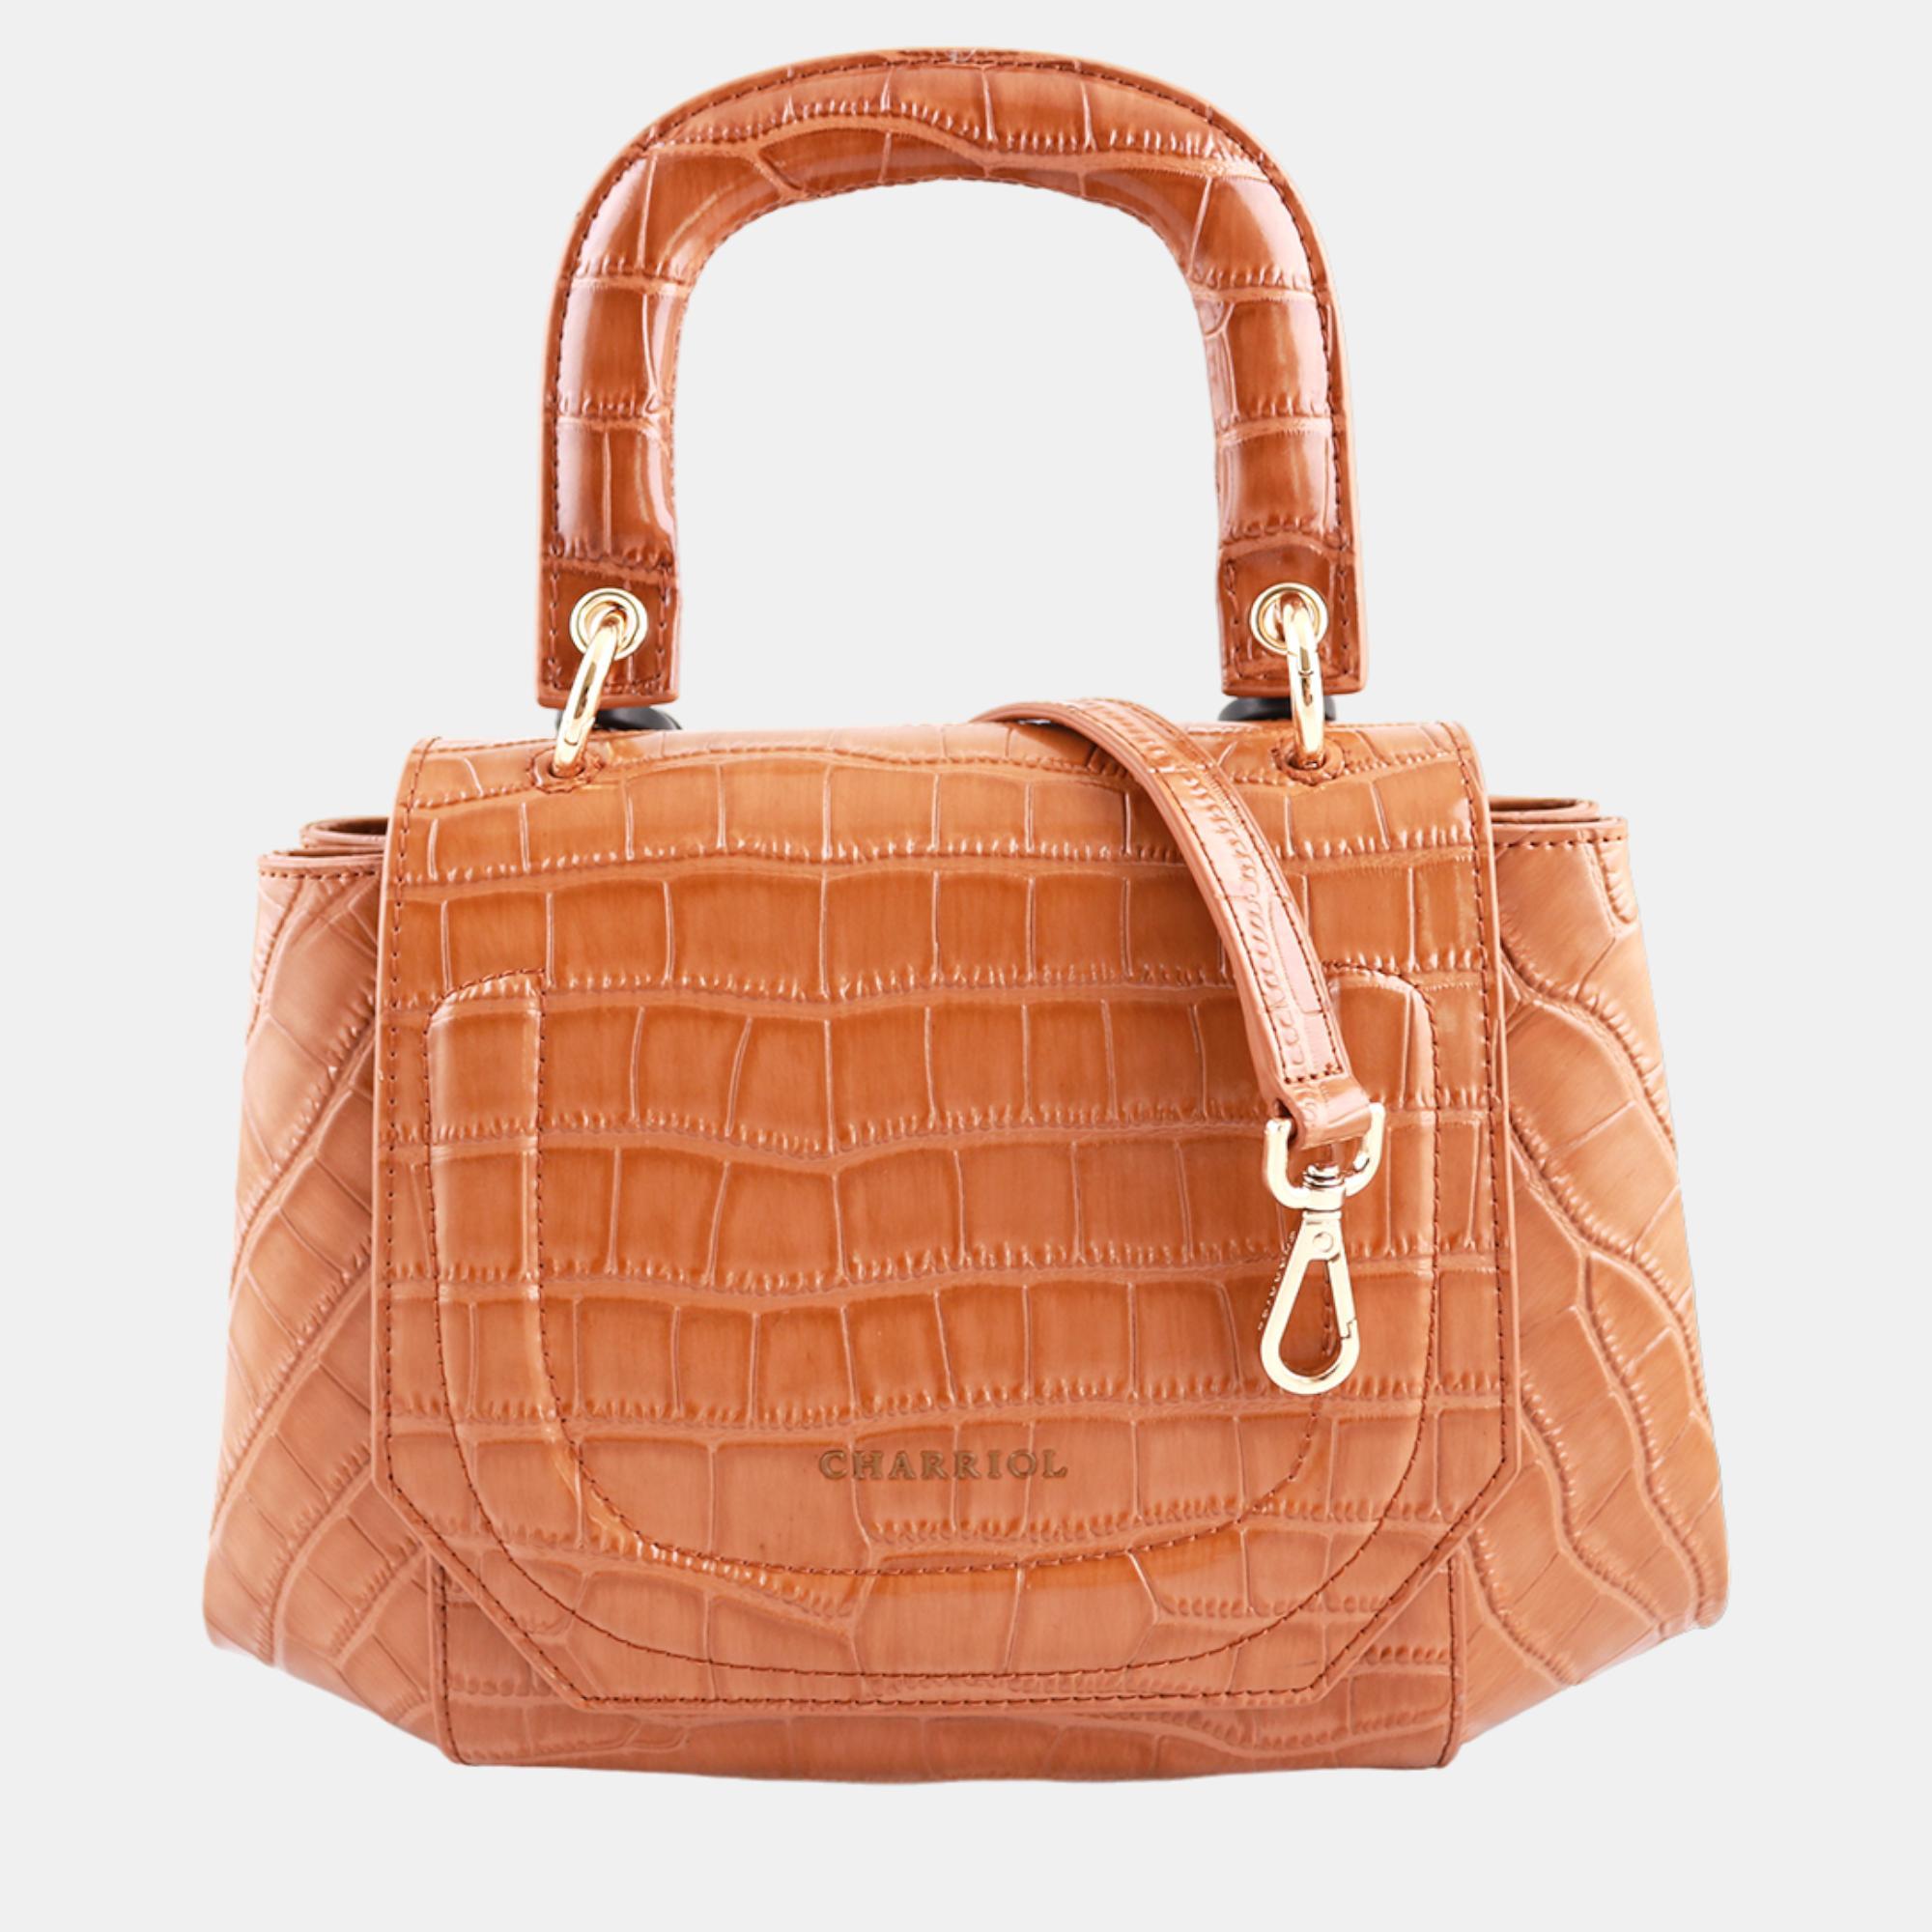 Charriol brown leather passion handbag